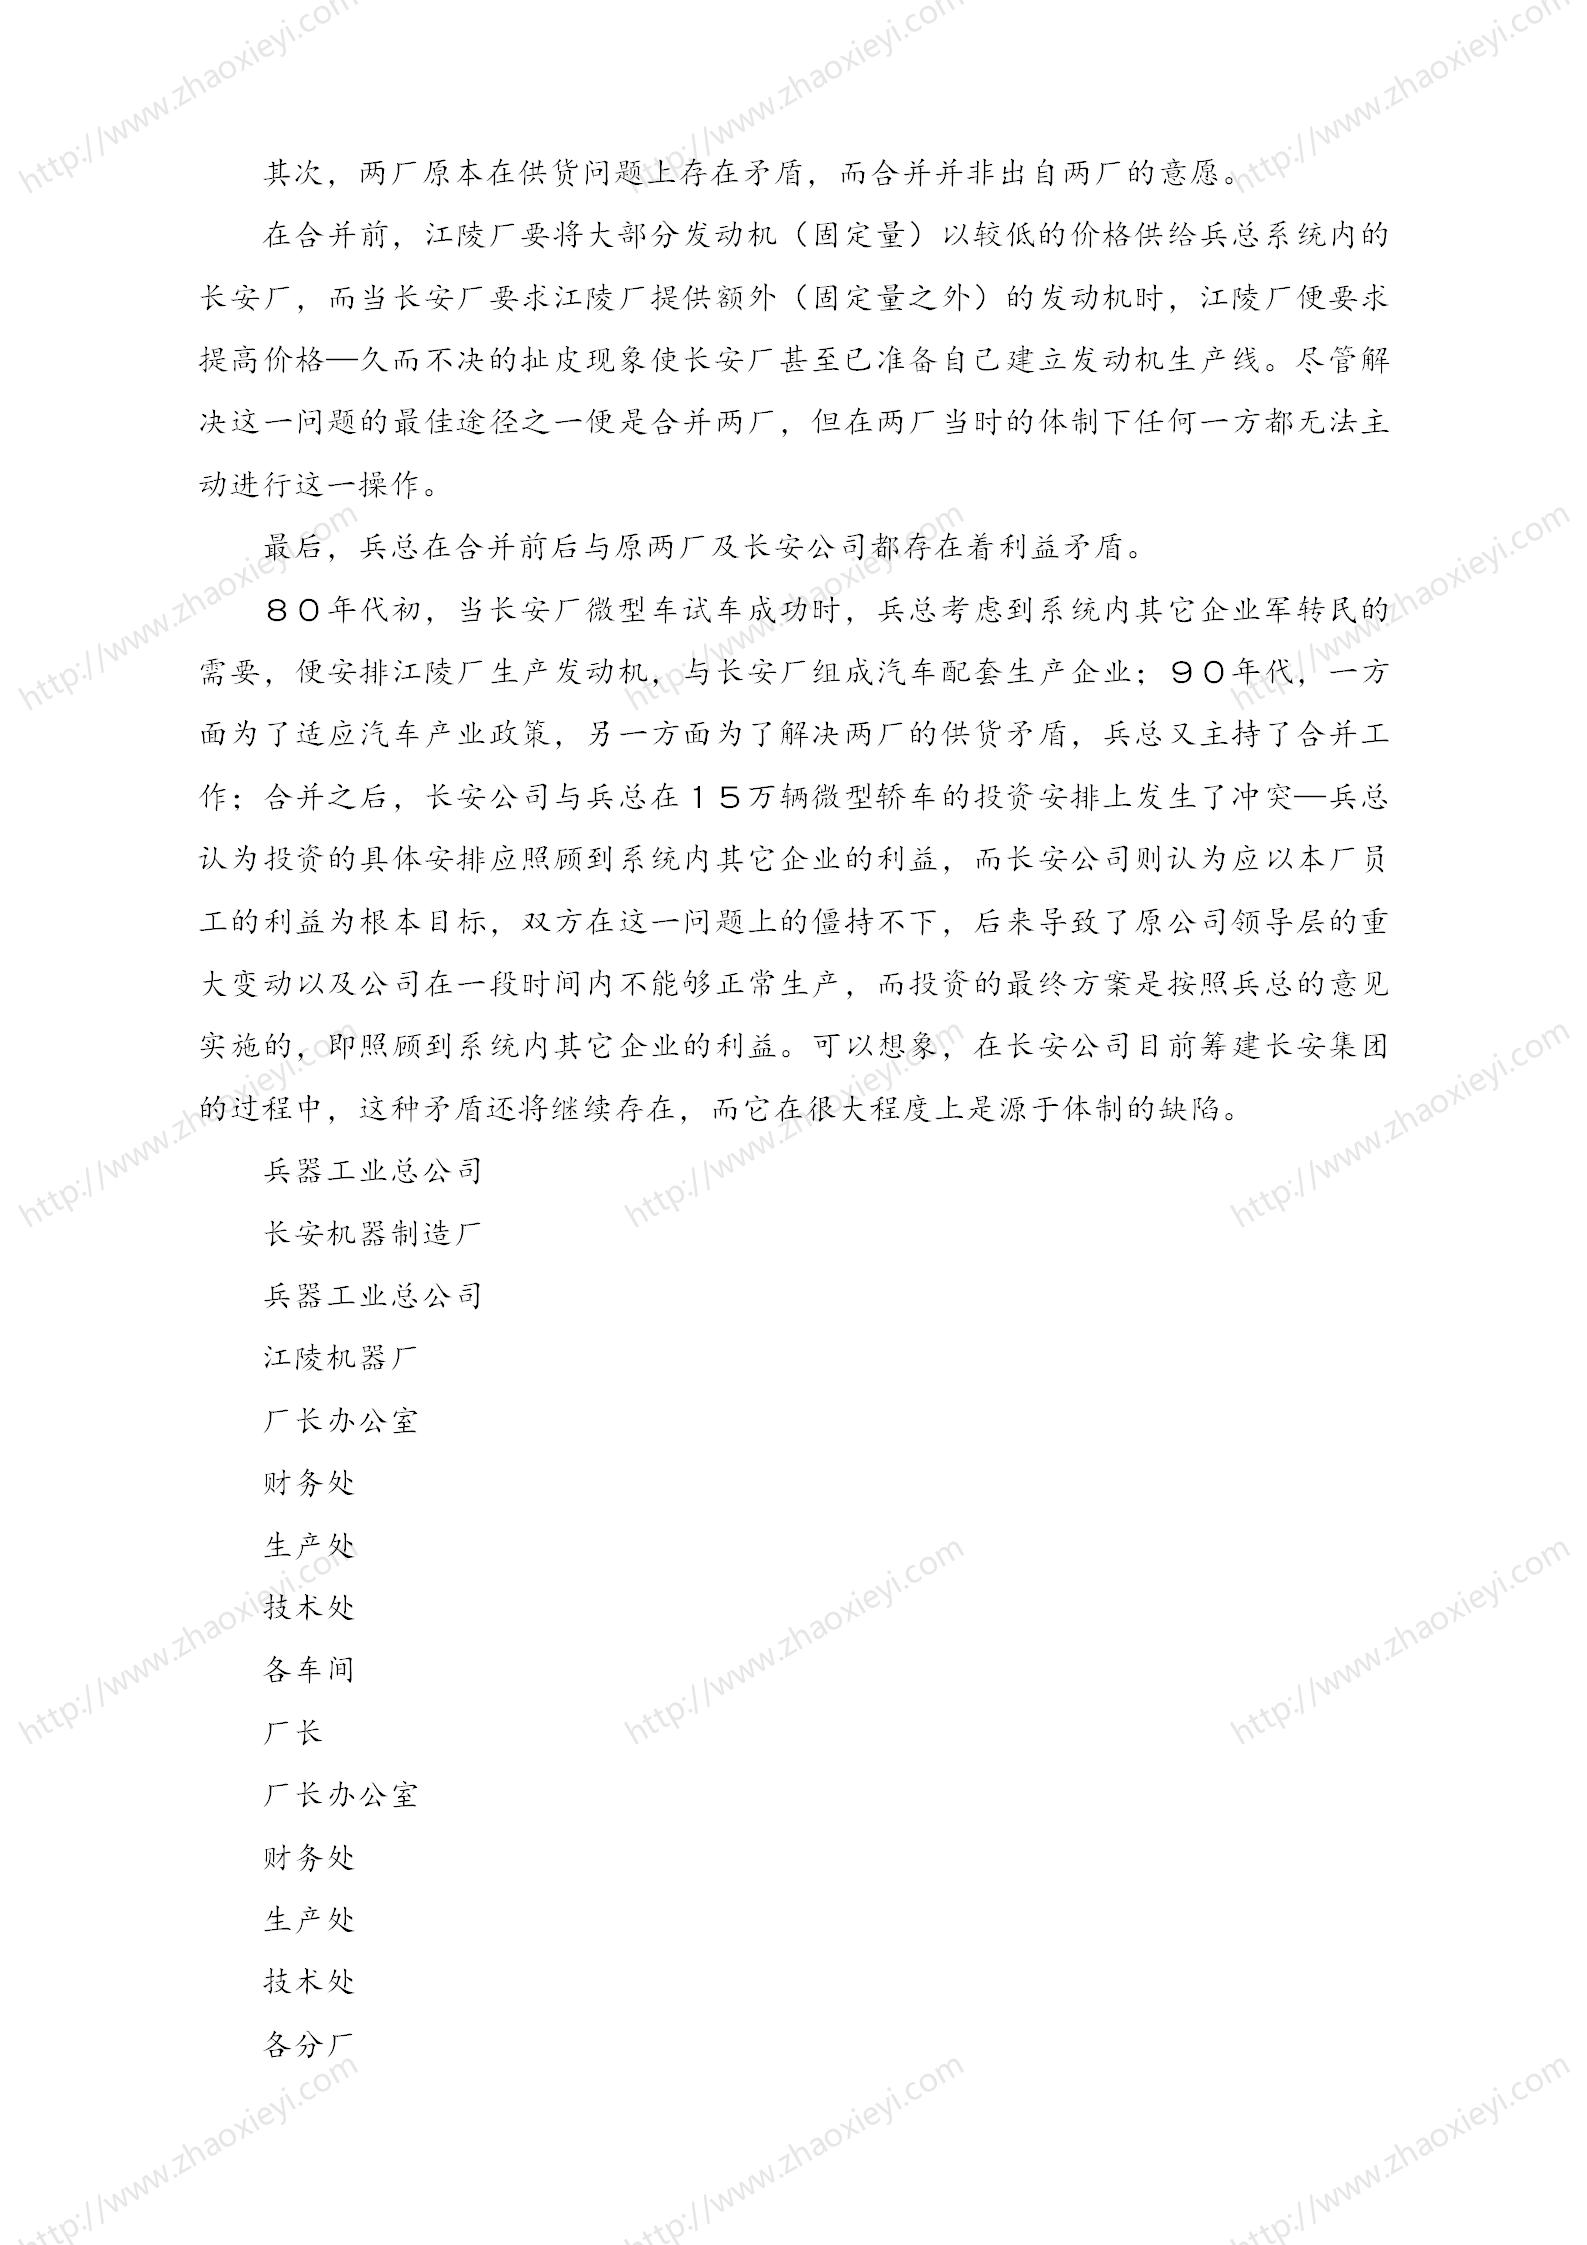 中国企业并购经典案例_150.jpg